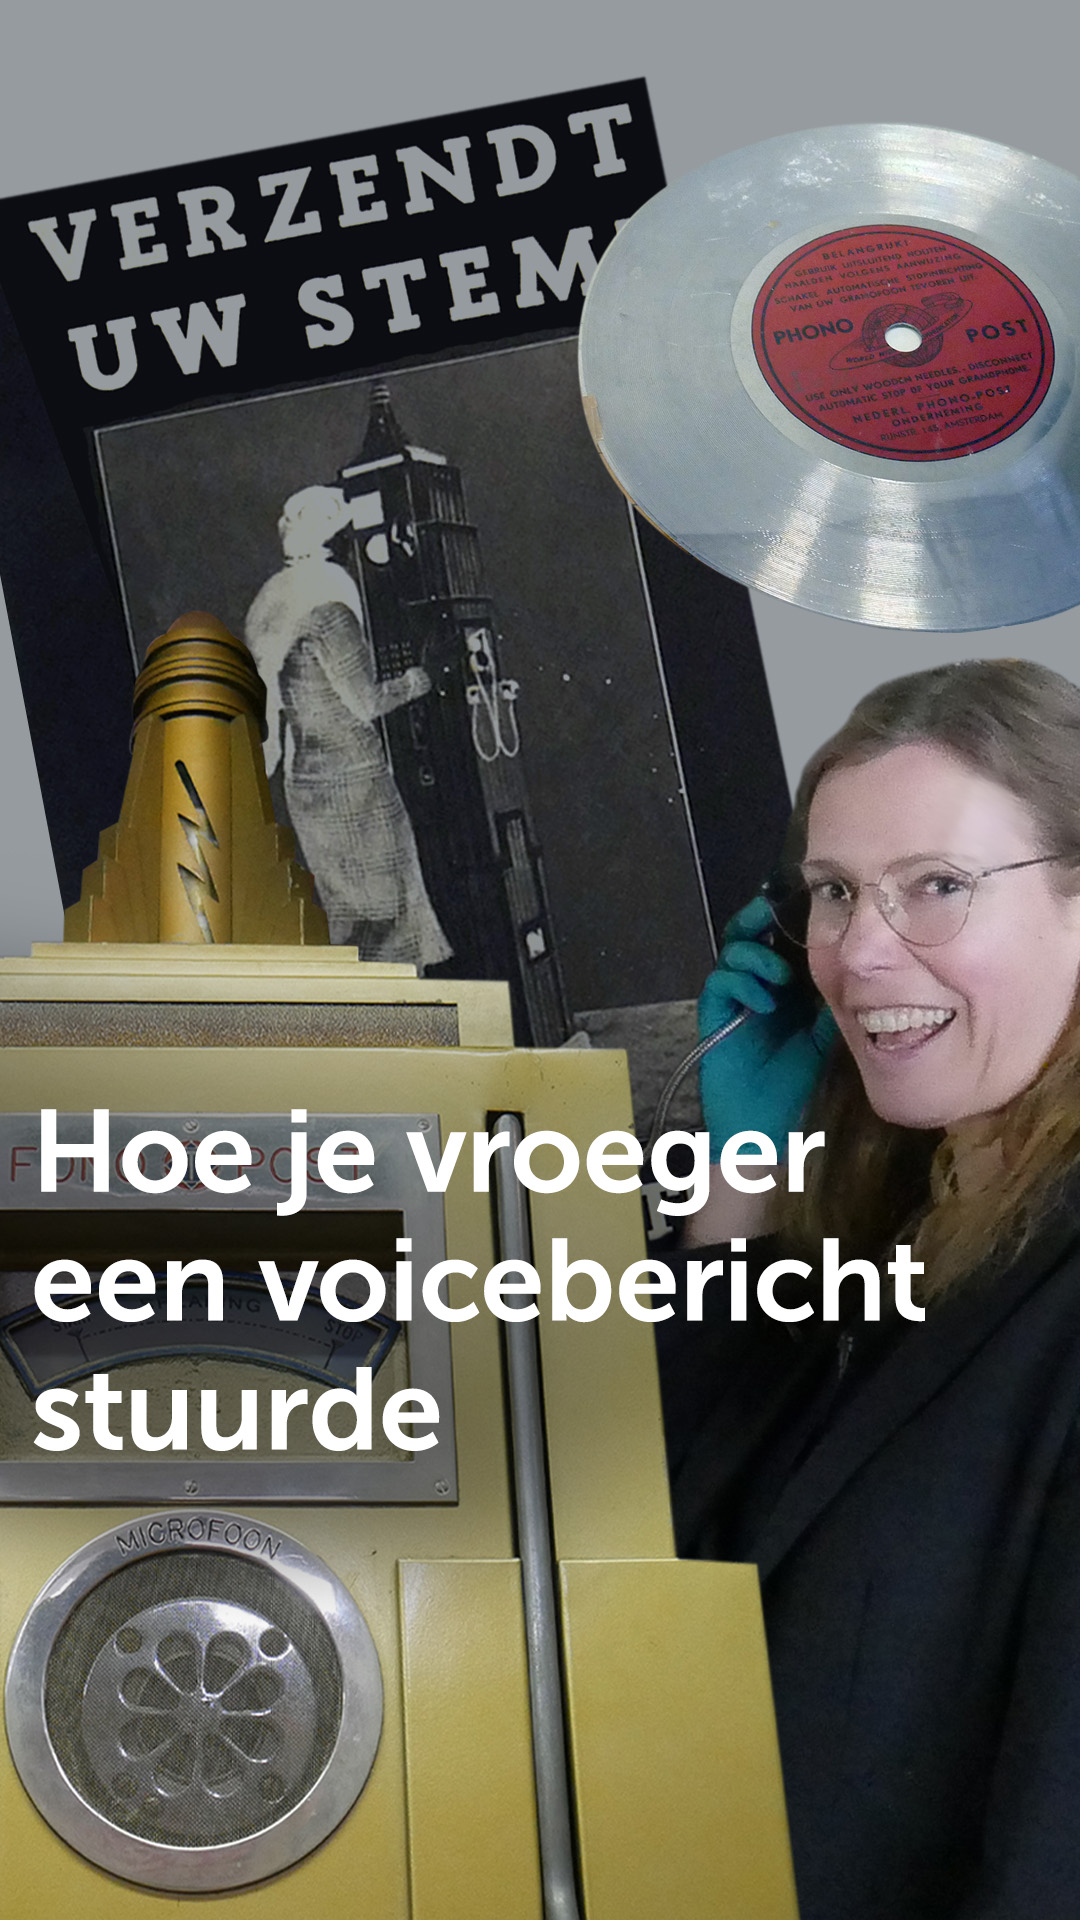 Conservator Anja Tollenaar staat naast de fonopost met een koptelefoon in haar hand te luisteren. Je ziet verder het schijfje waarop je stem wordt gezet en een flyer met de tekst 'verzendt uw stem!' Daaroverheen staat de titel: "hoe je vroeger een voicebericht stuurde"